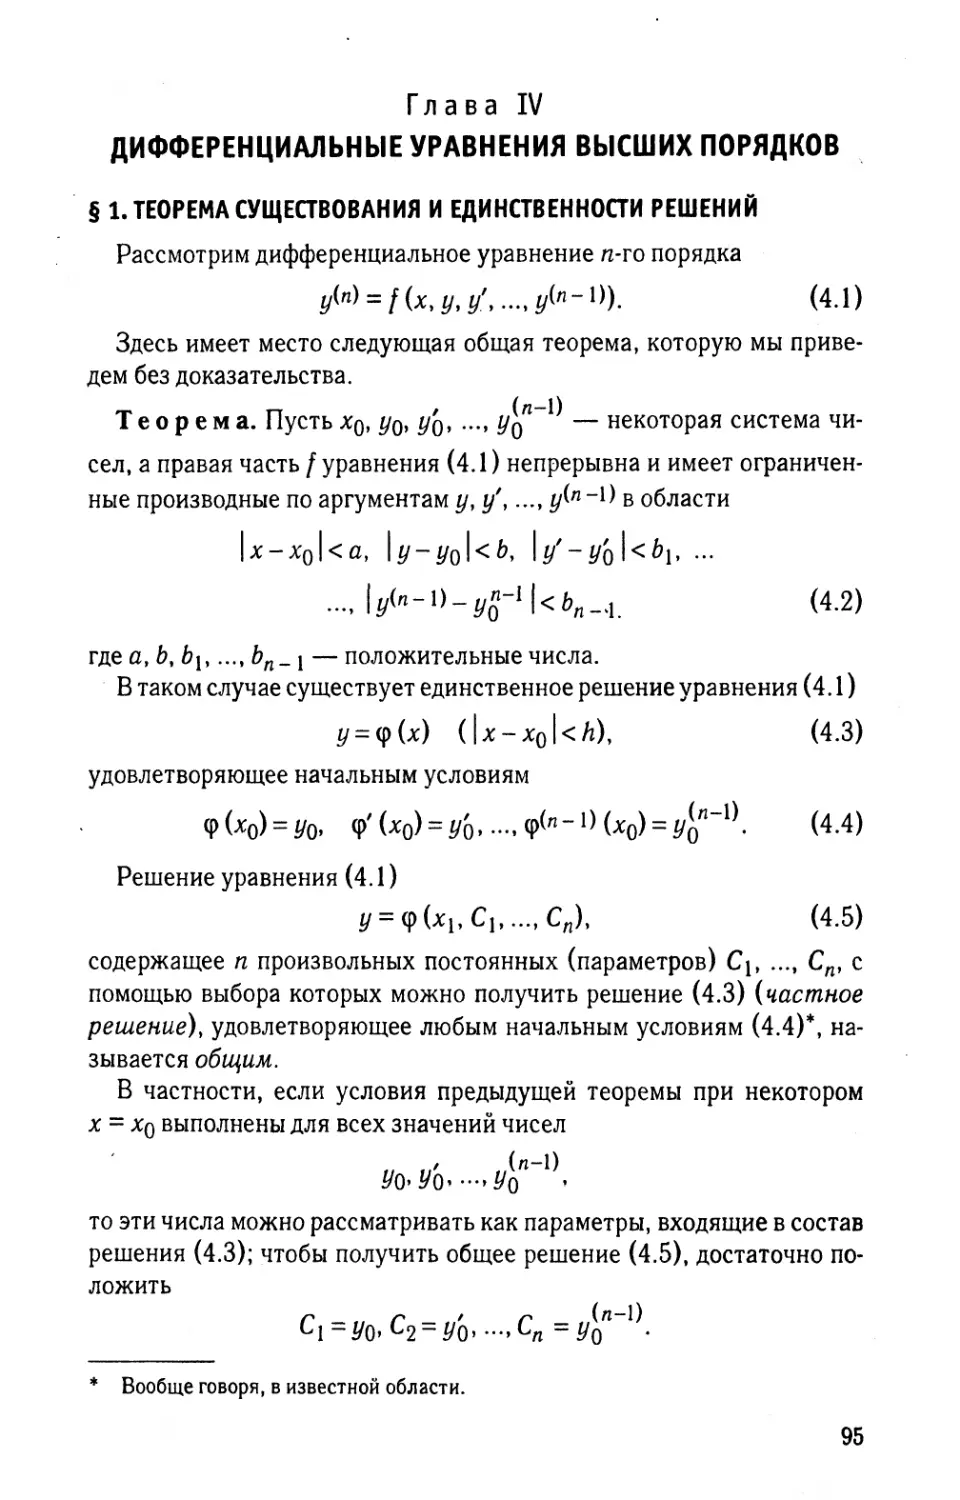 Глава IV. Дифференциальные уравнения высших порядков